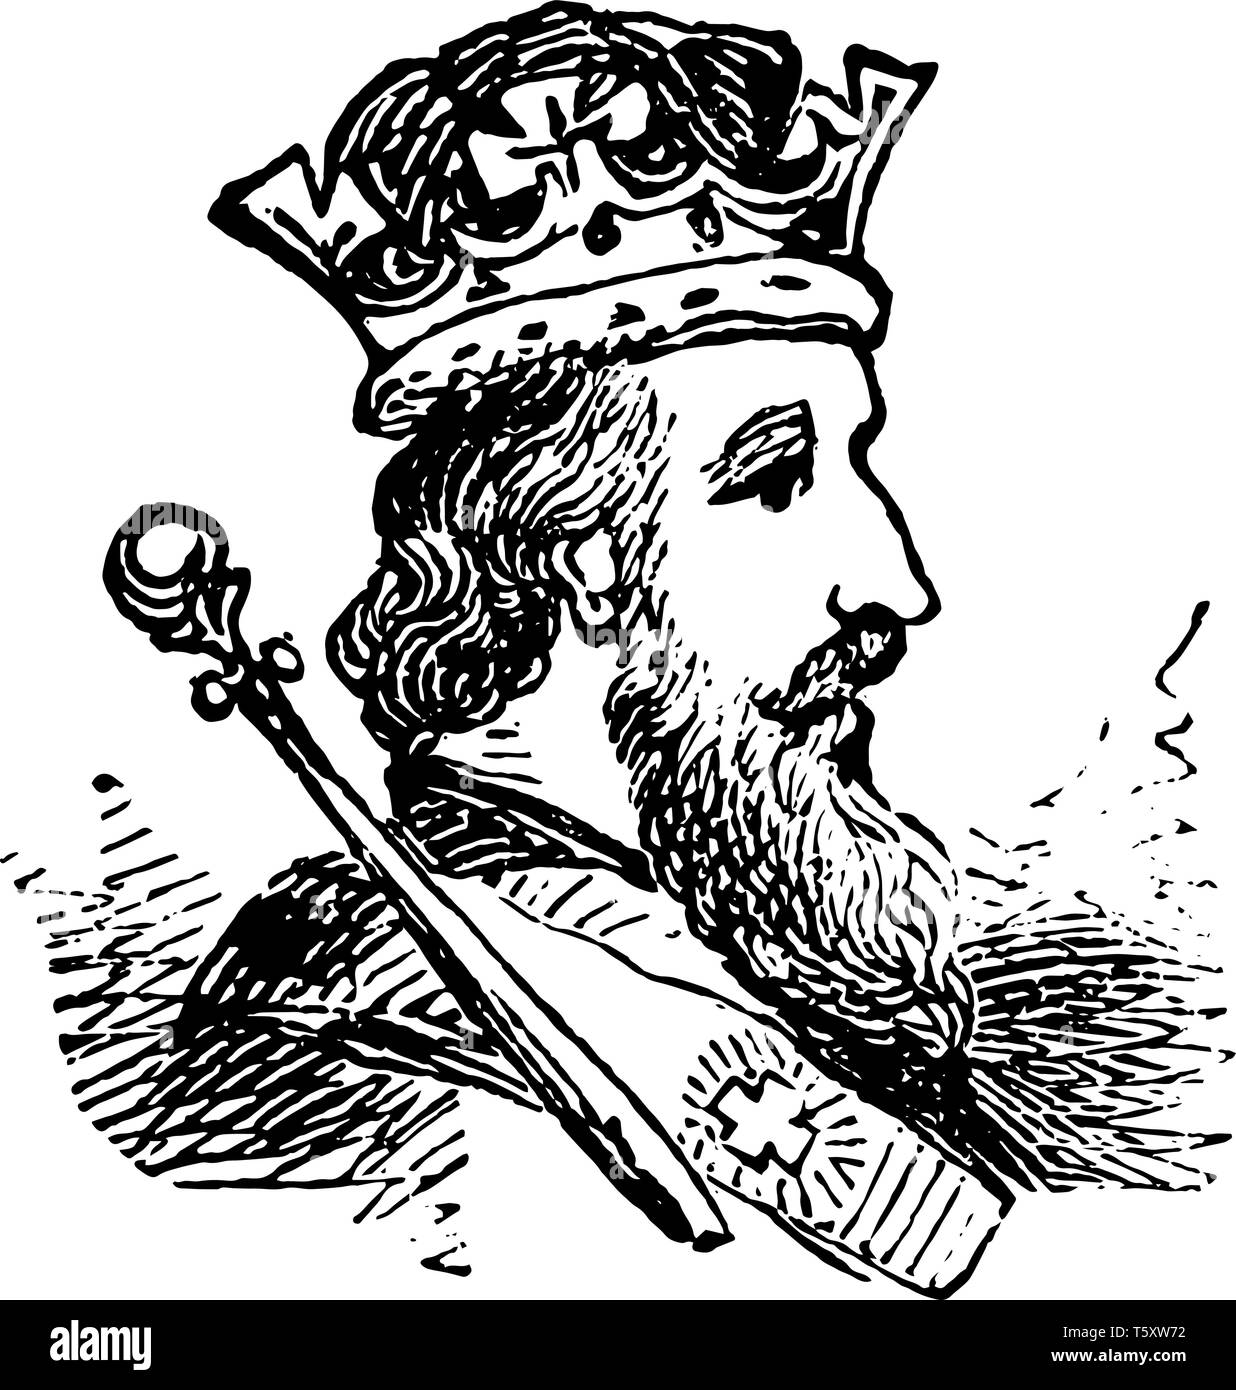 Ein erwachsener Mann König mit Krone in diesem Bild, vintage Strichzeichnung oder Gravur Abbildung. Stock Vektor